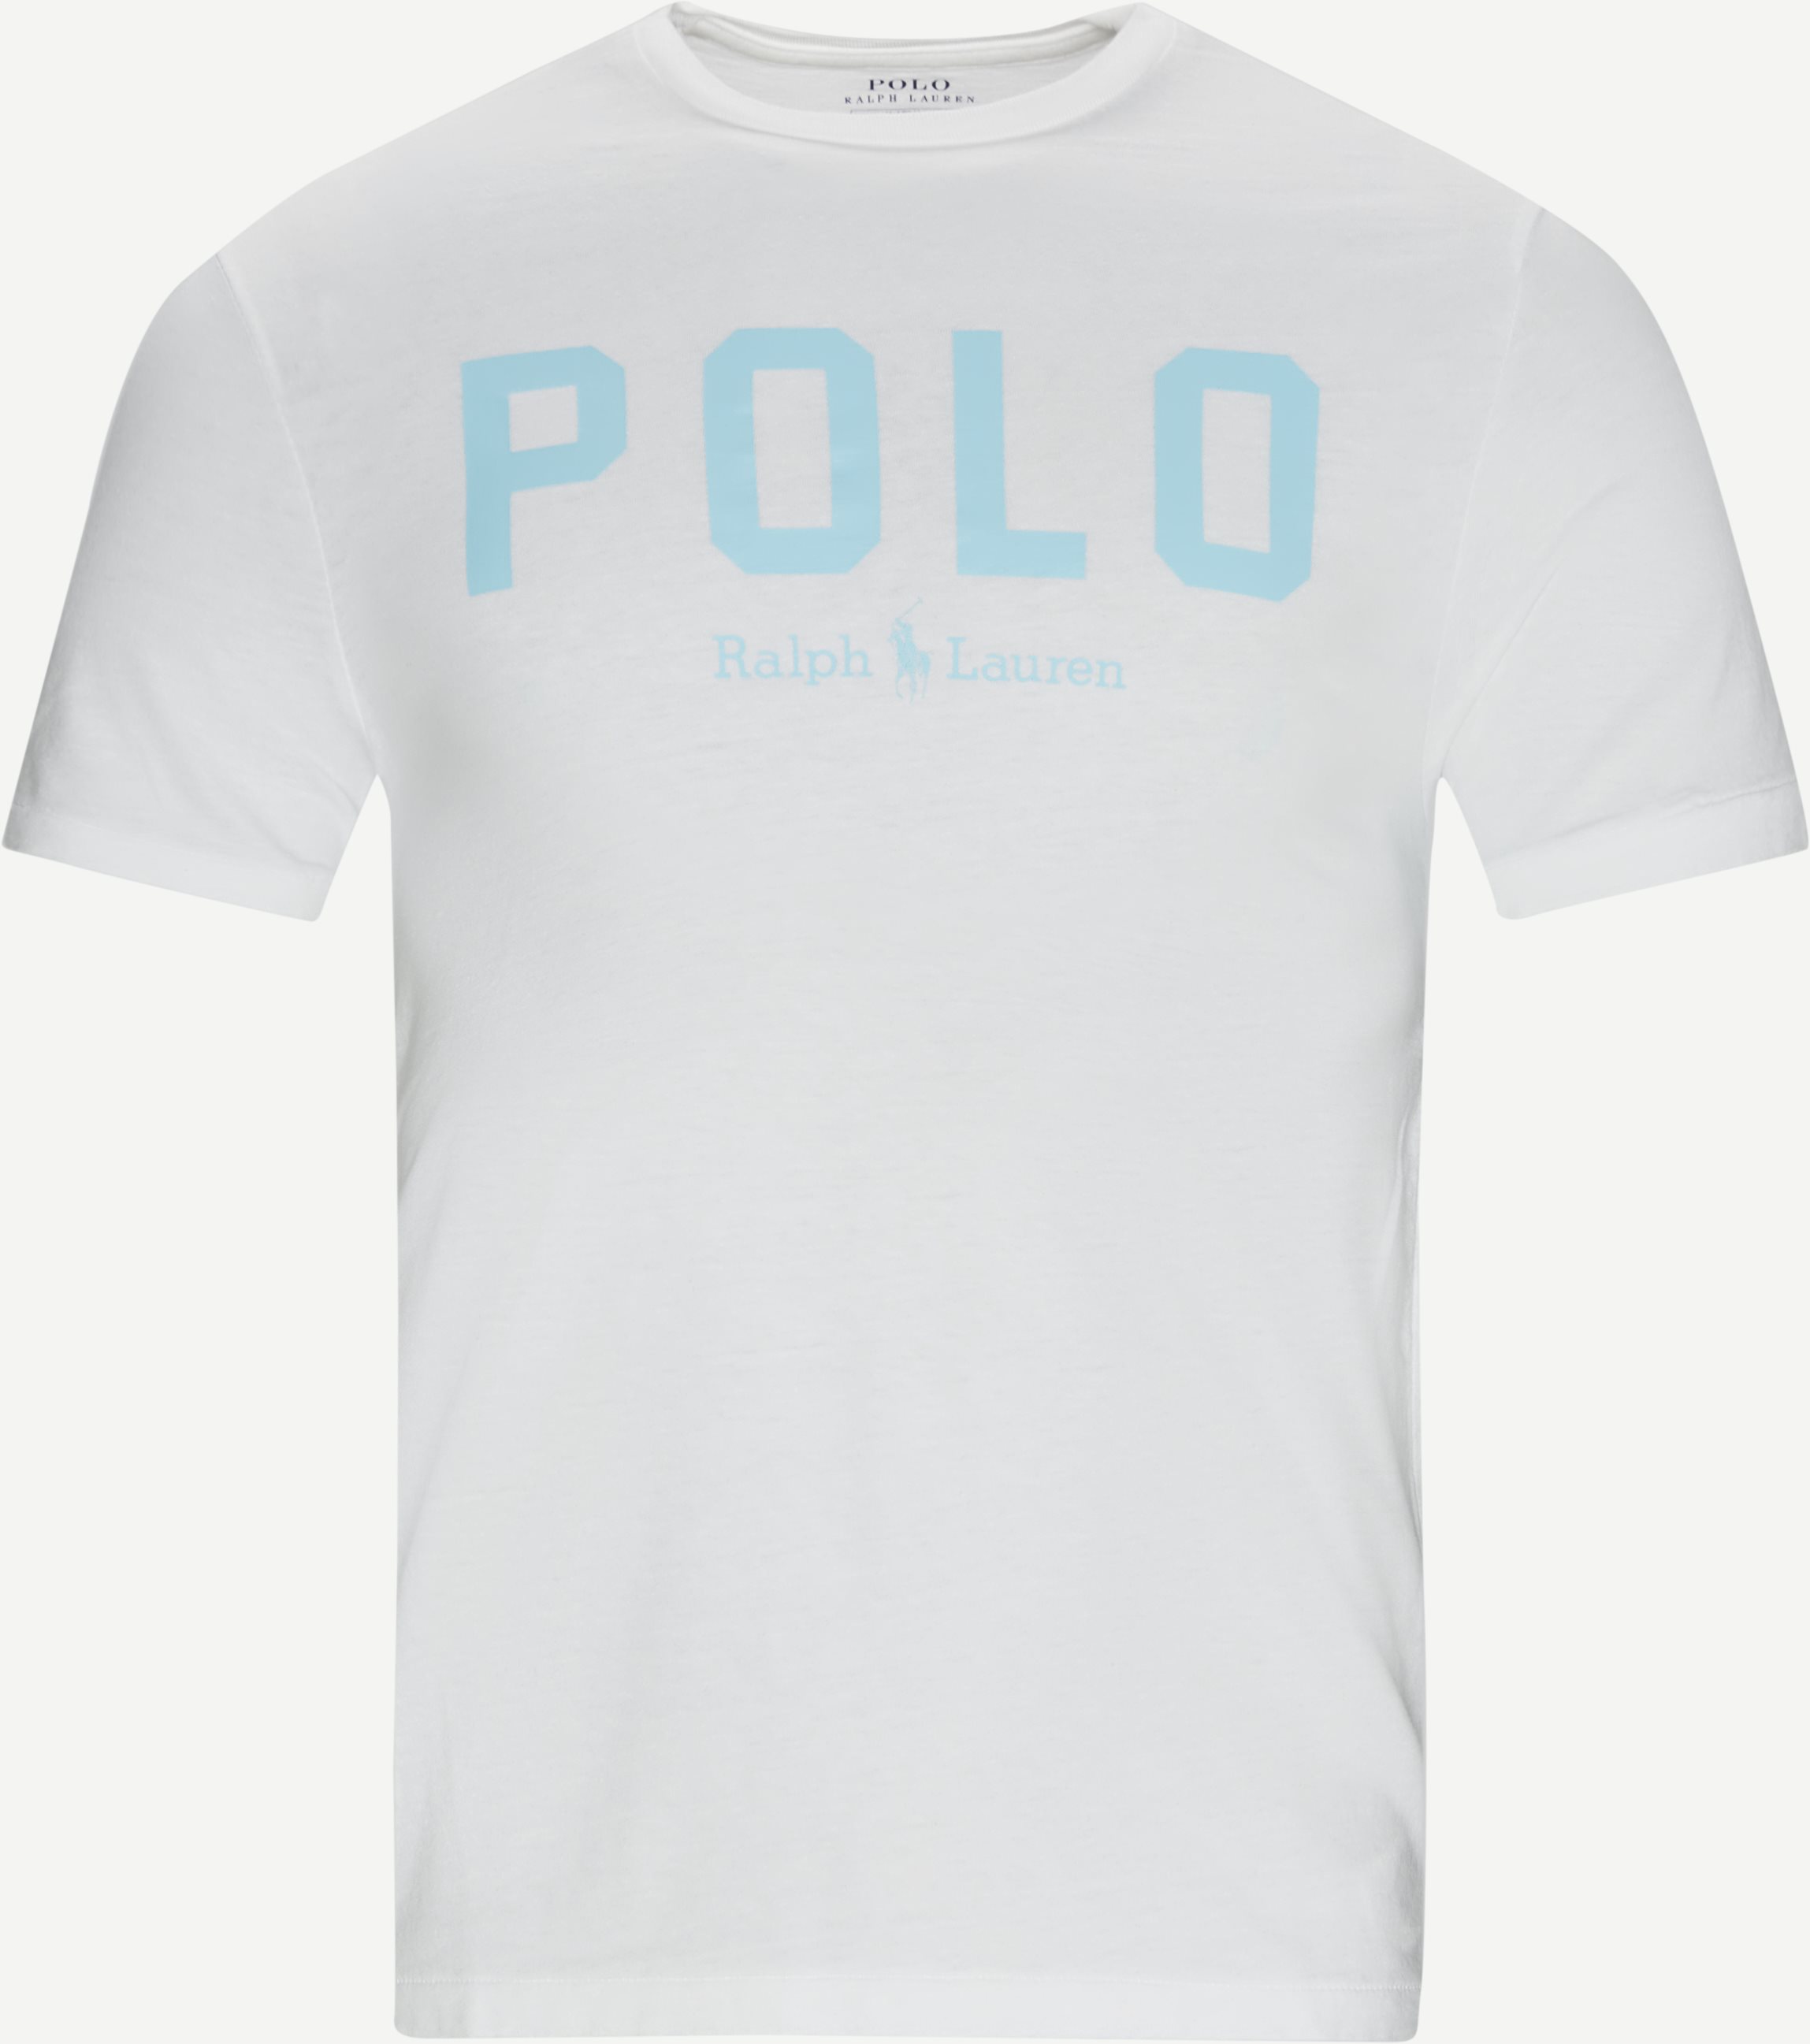 T-Shirt mit Logo - T-Shirts - Slim fit - Weiß